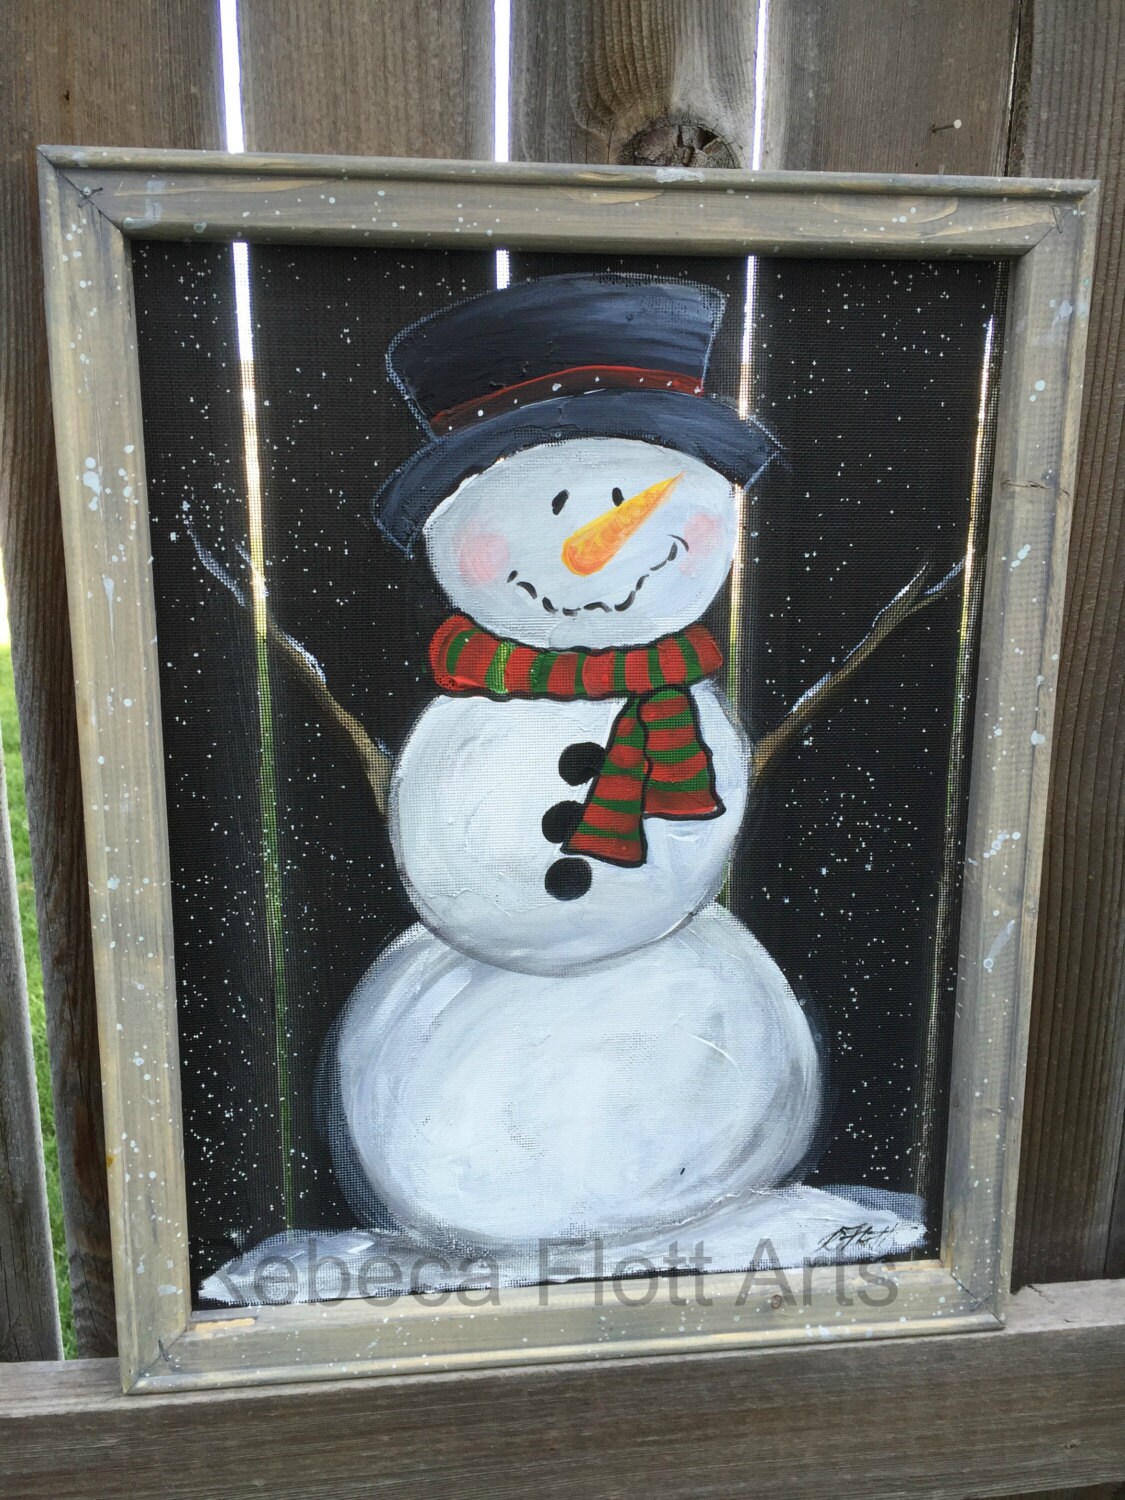 Snowman hand painted window screen outdoor sign indoor